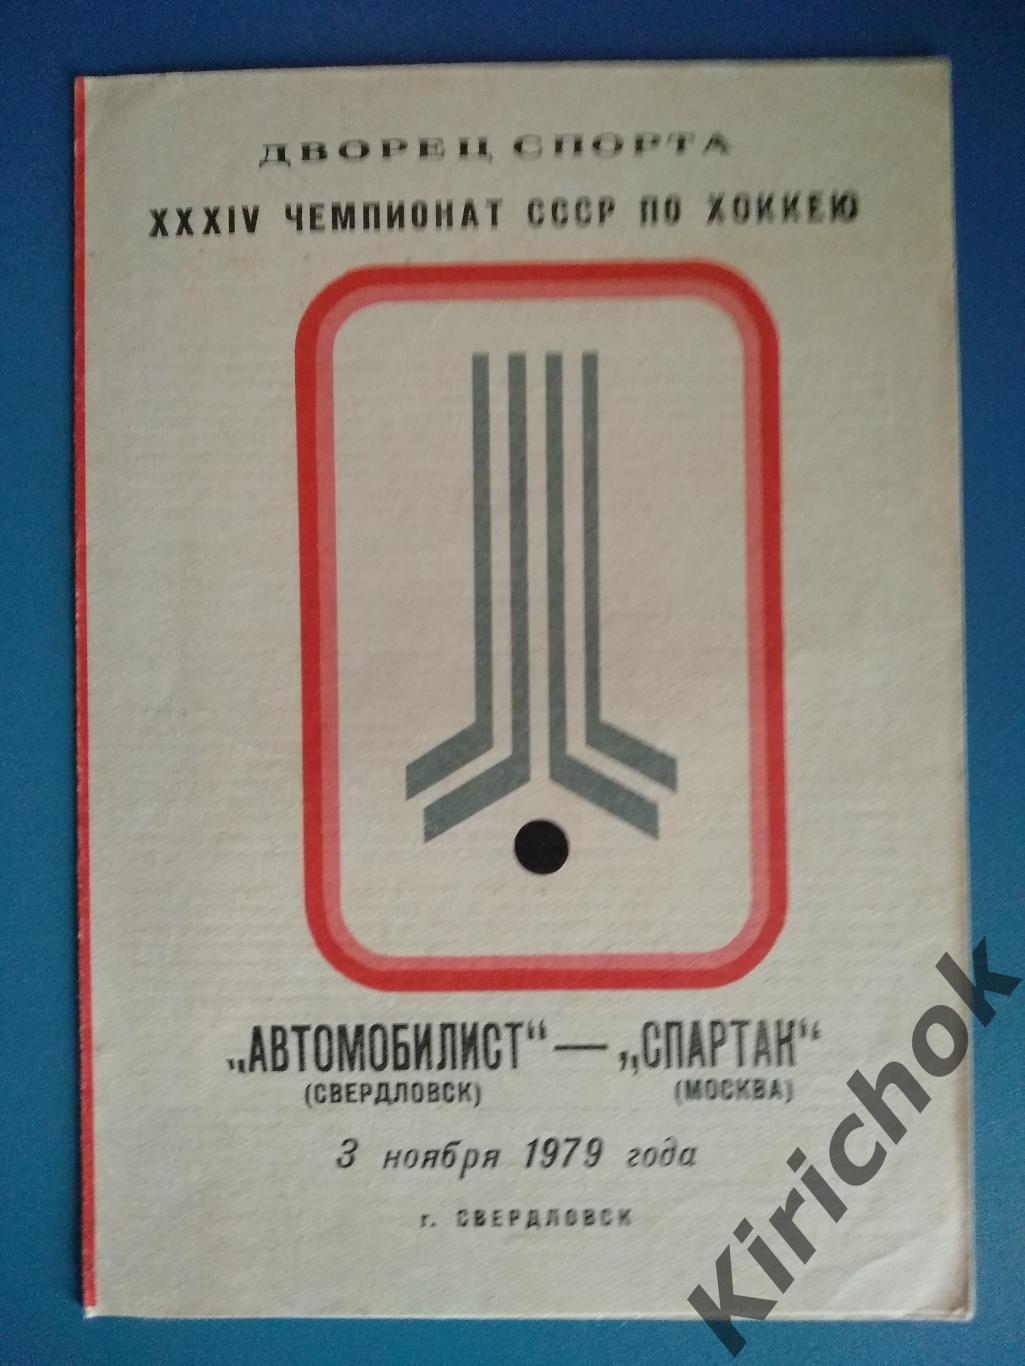 Автомобилист Свердловск - Спартак Москва 1979